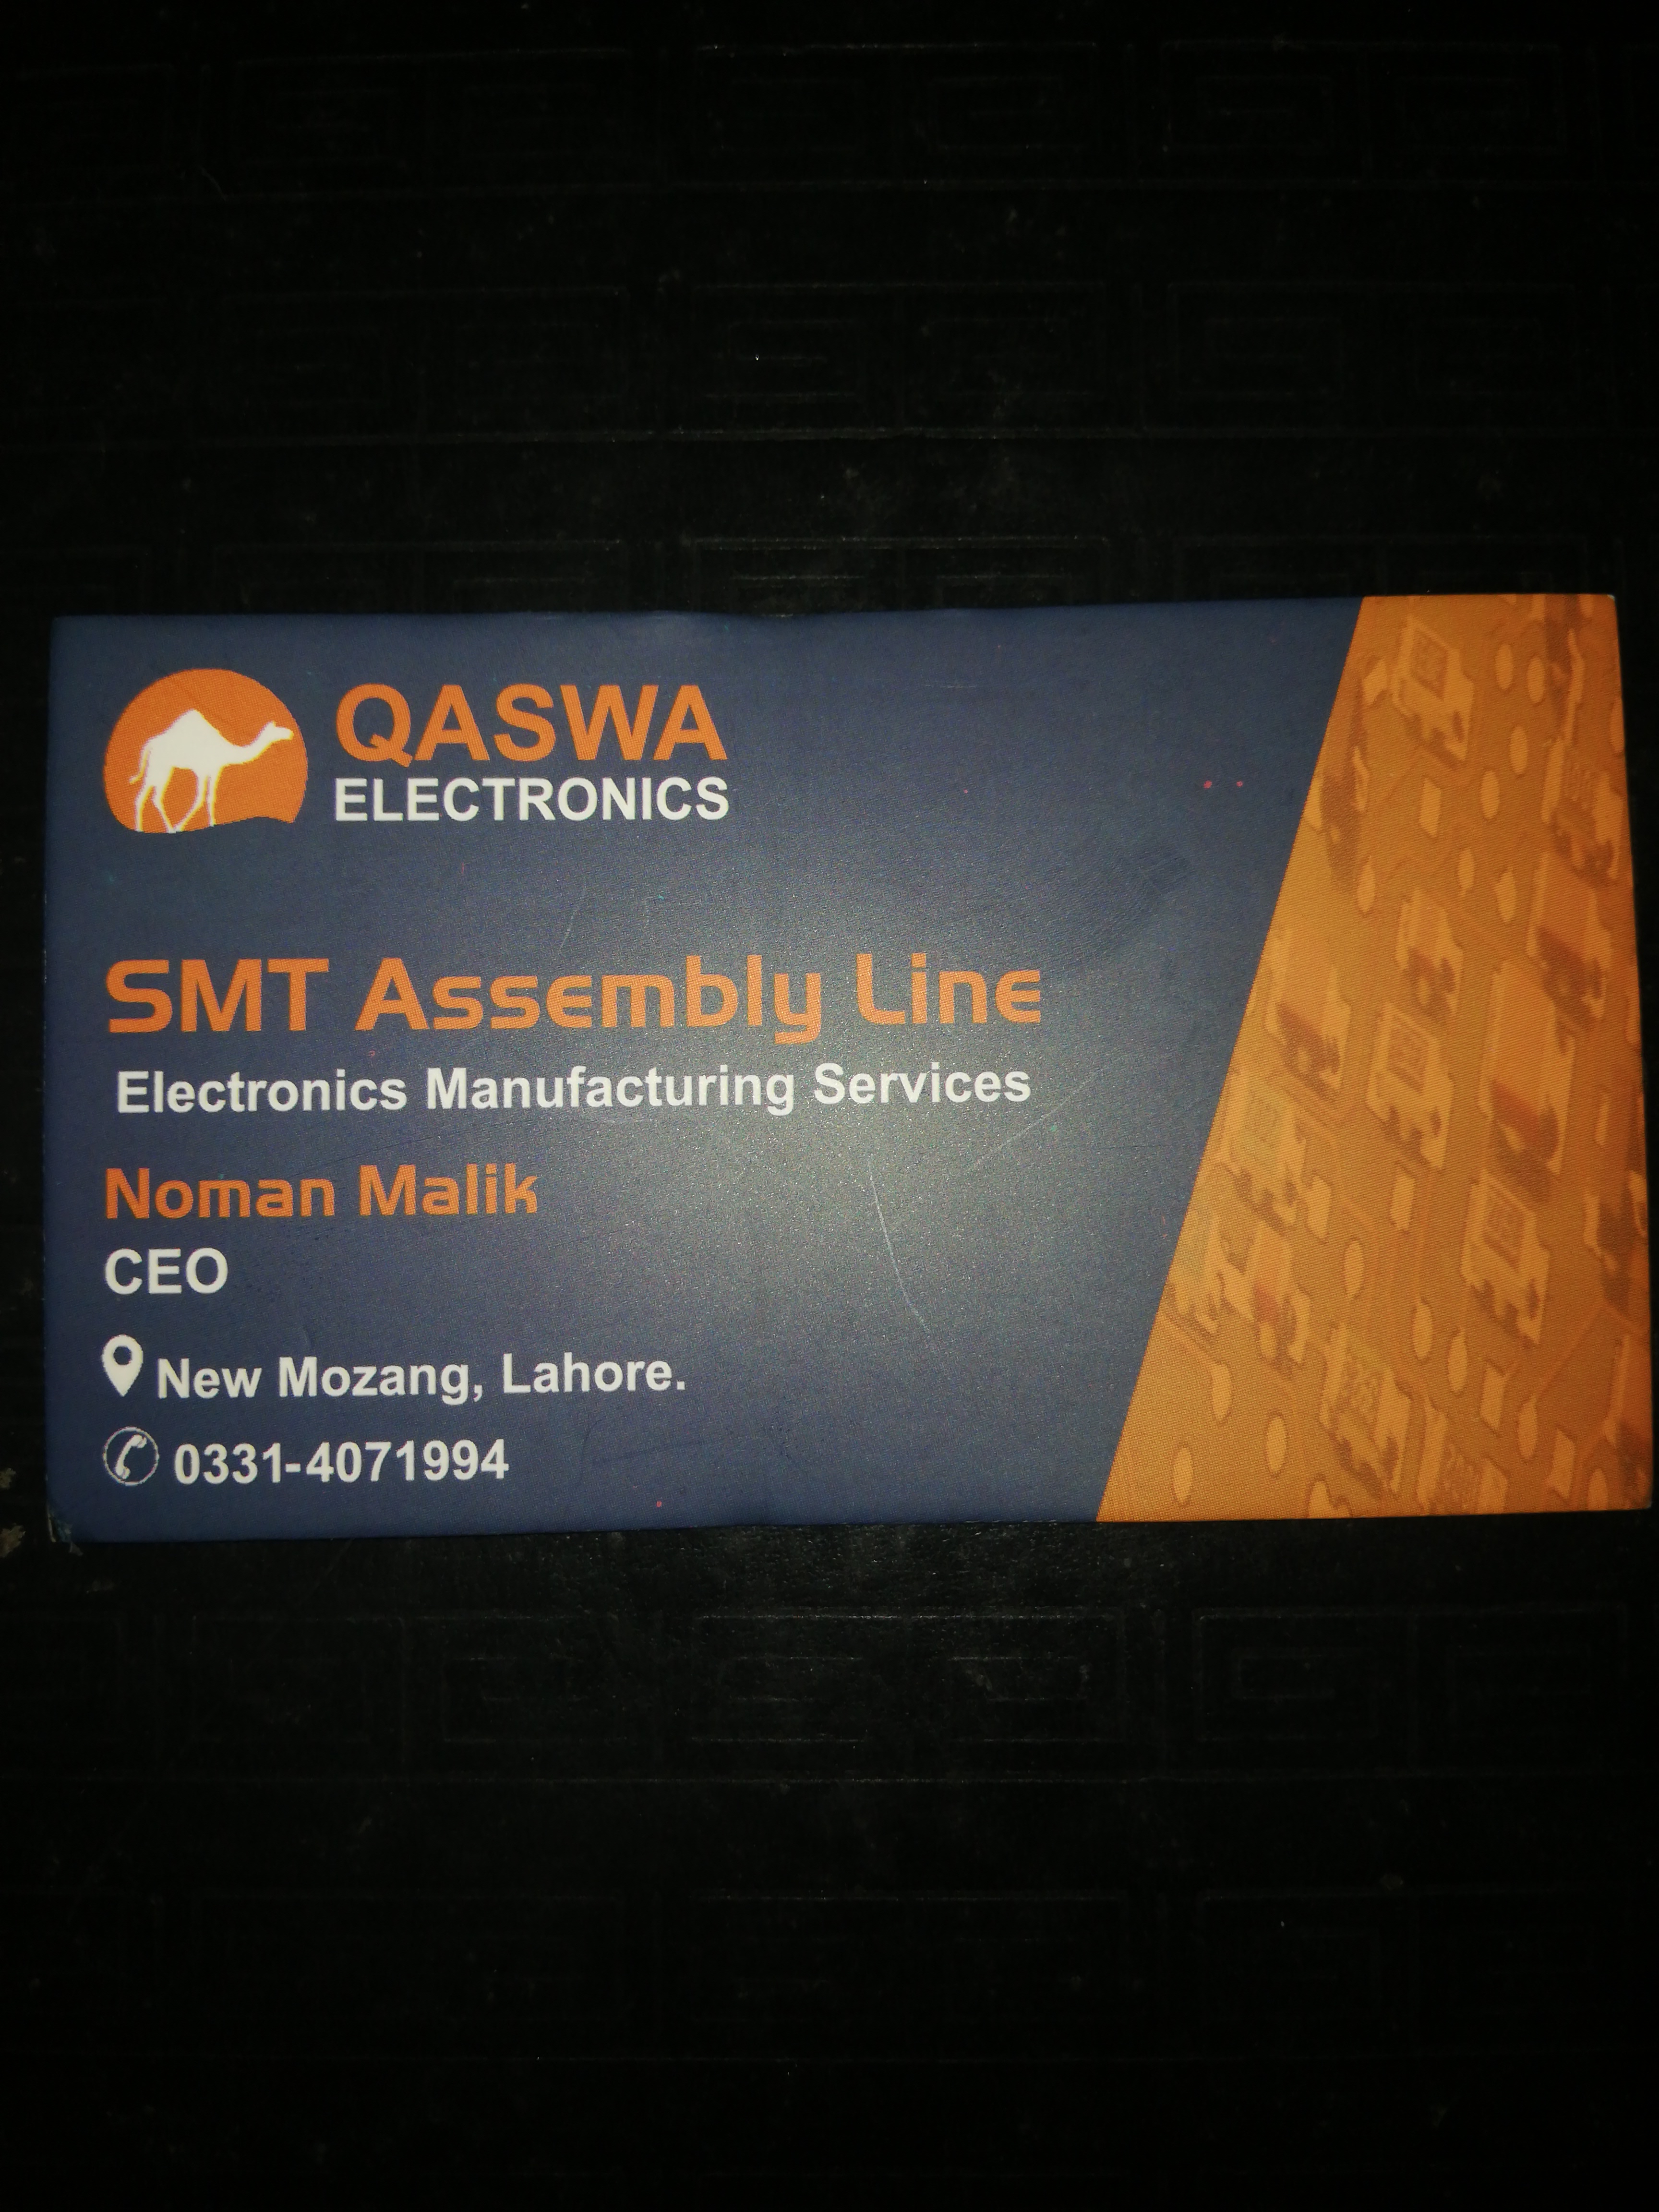 QASWA ELECTRONICS